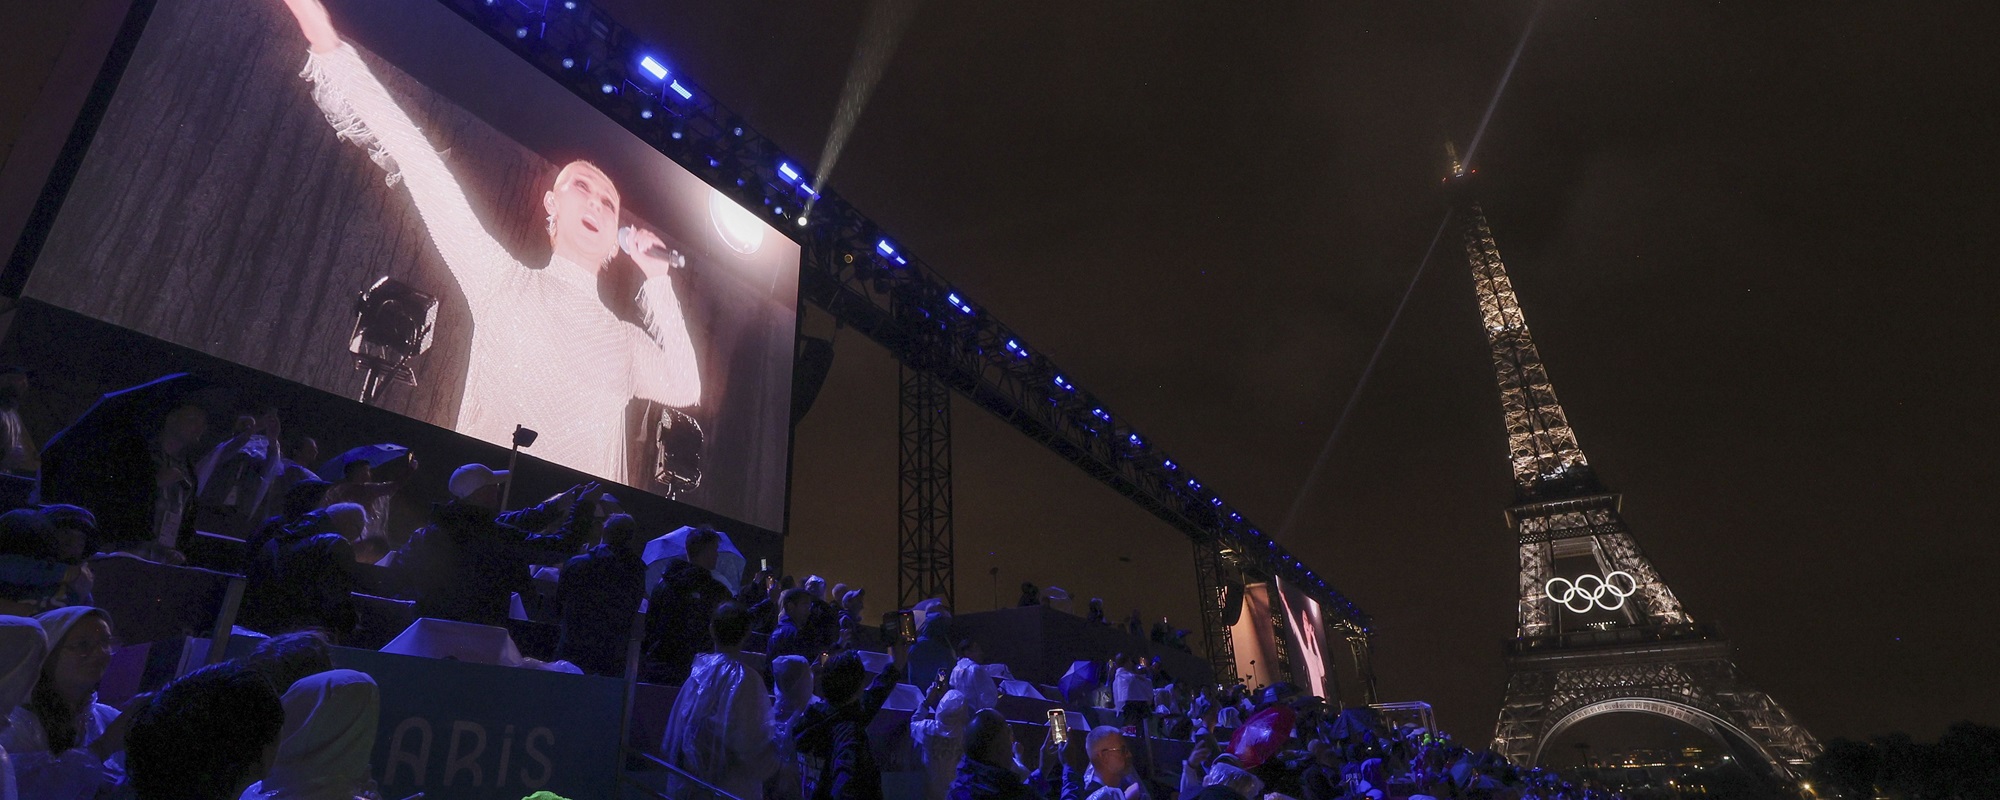 La actuación de Celine Dion en lo alto de la Torre Eiffel en los Juegos Olímpicos hace llorar a Kelly Clarkson y enloquece a los fanáticos